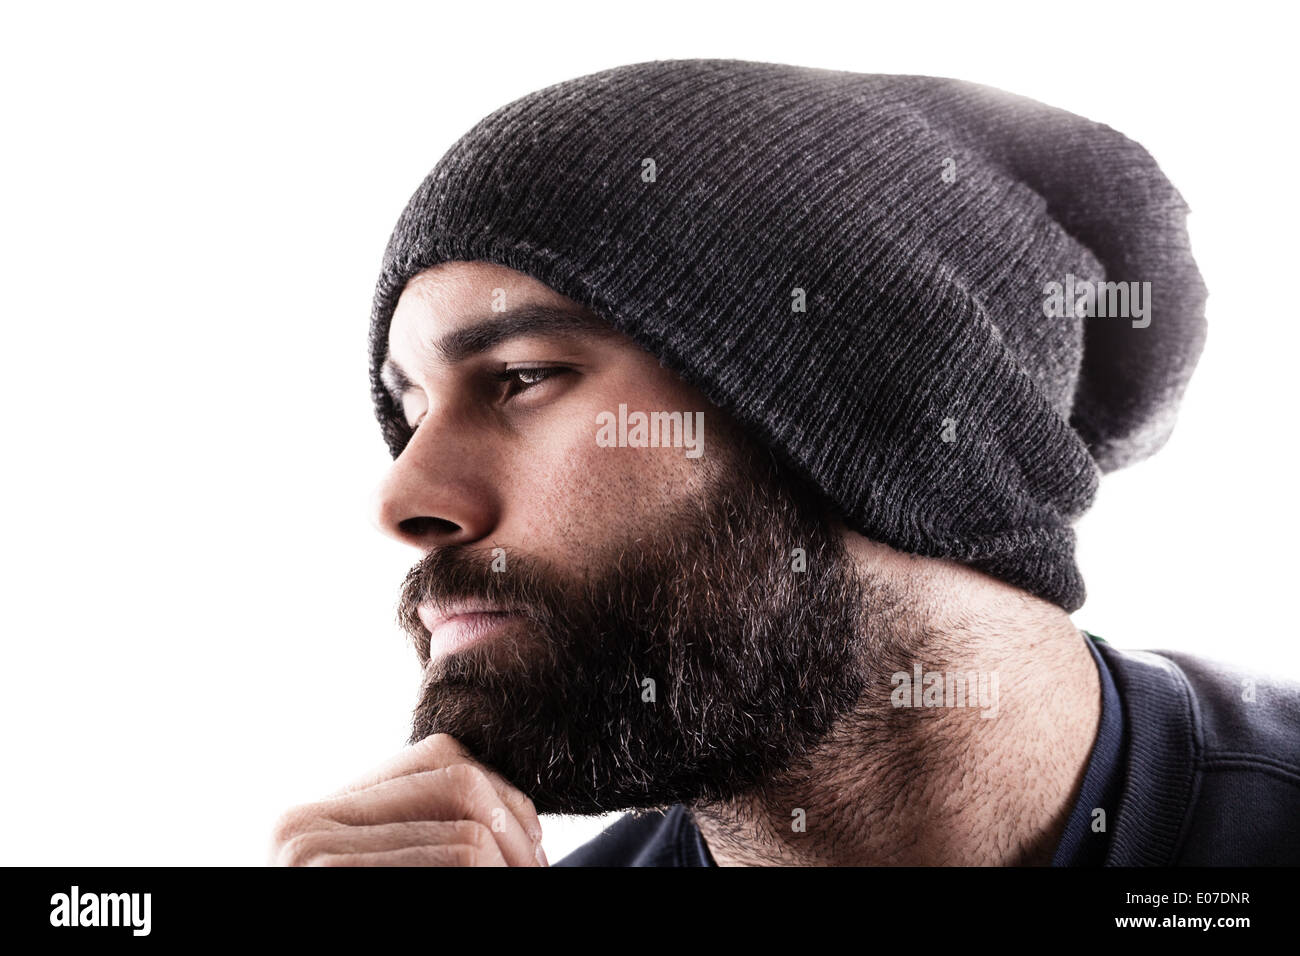 Ritratto di un uomo di pensiero con un beanie e la barba, forse un rapper o un gangster Foto Stock